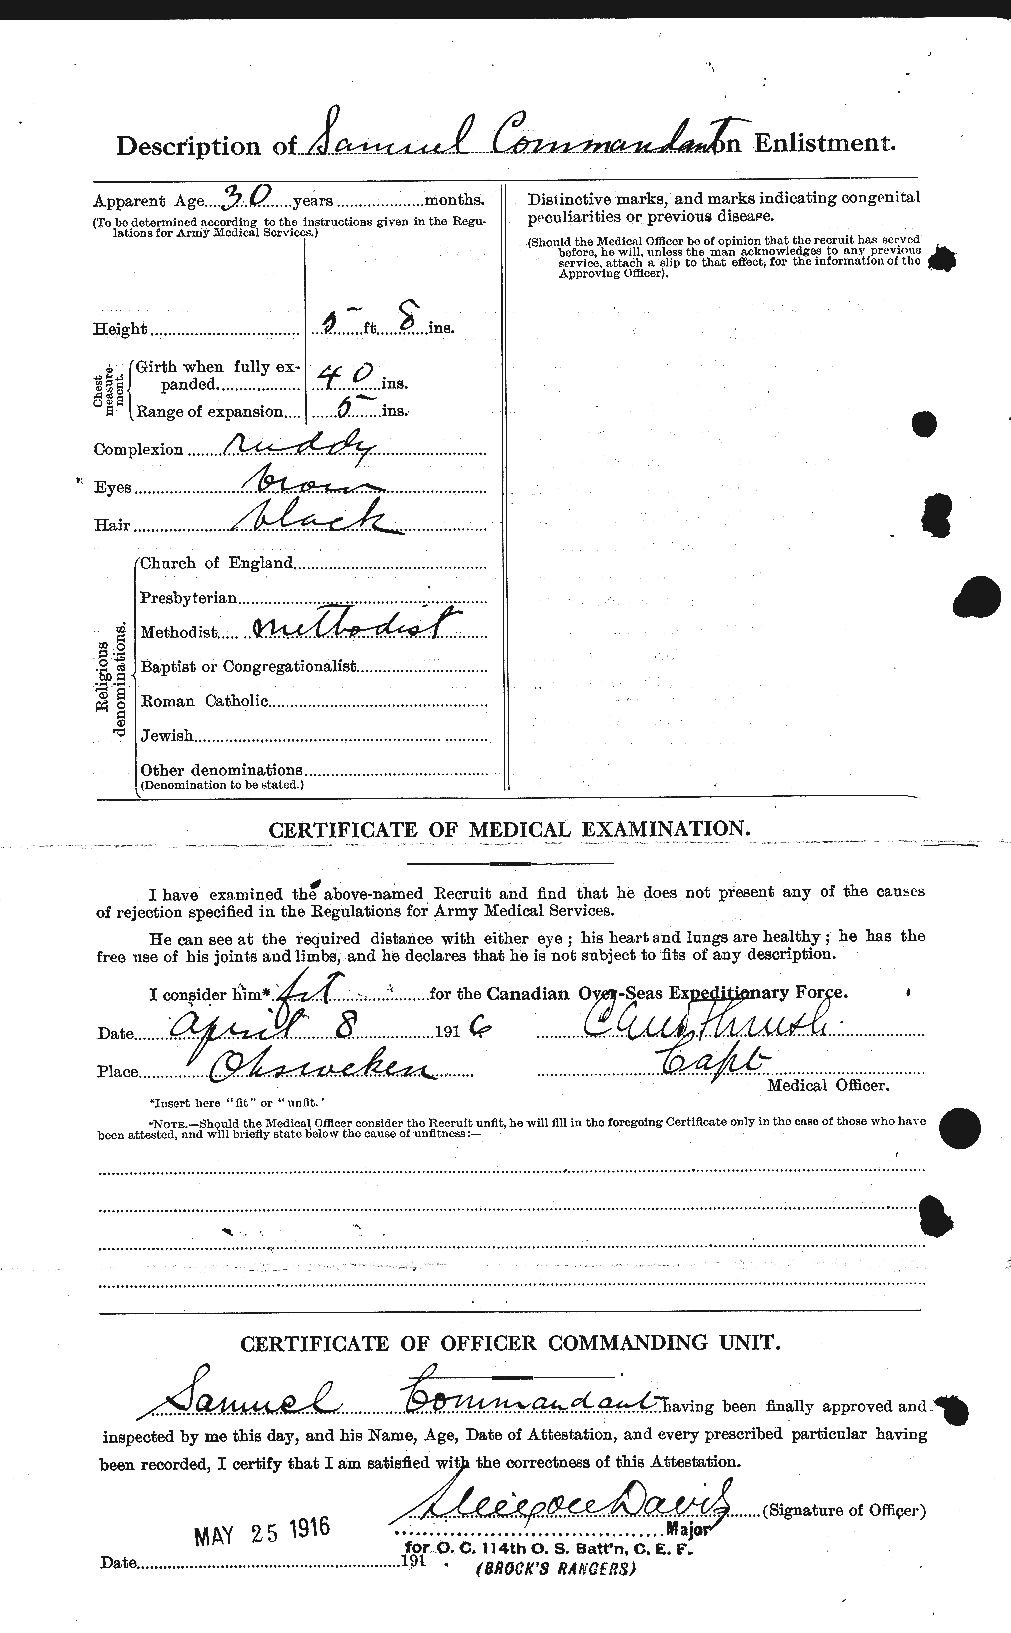 Dossiers du Personnel de la Première Guerre mondiale - CEC 069188b